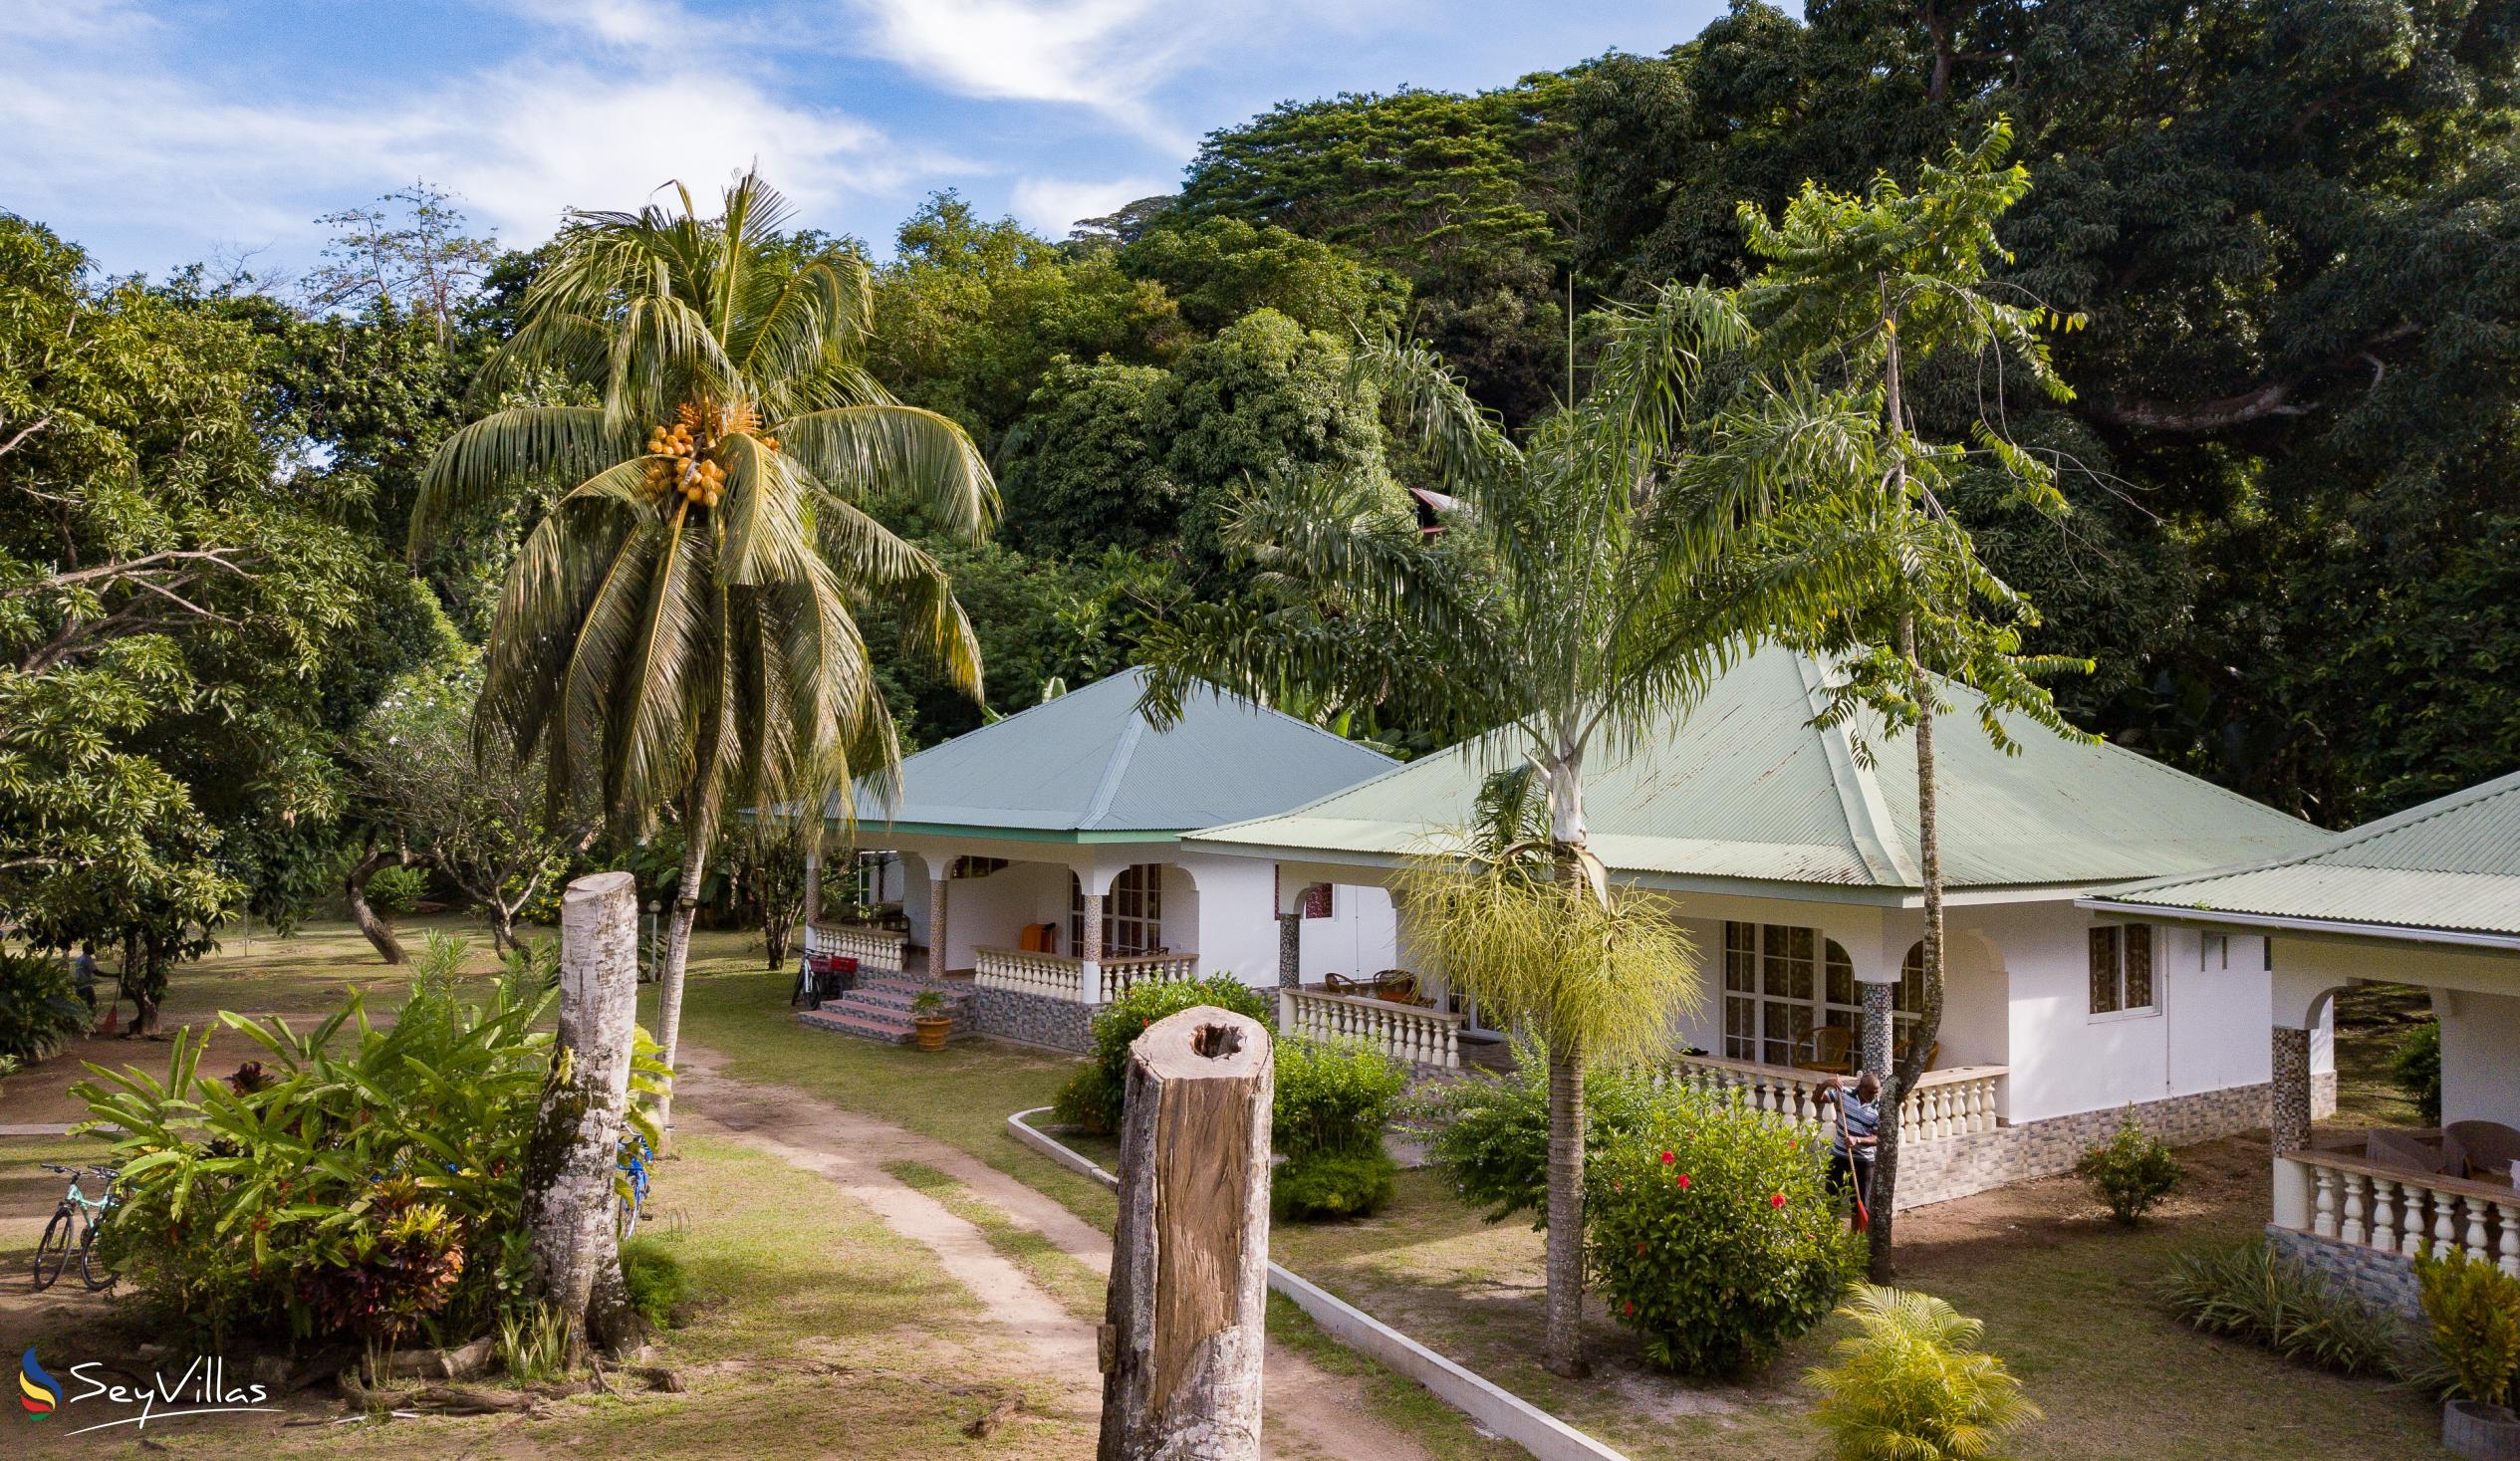 Foto 5: Chalet Bamboo Vert - Aussenbereich - La Digue (Seychellen)